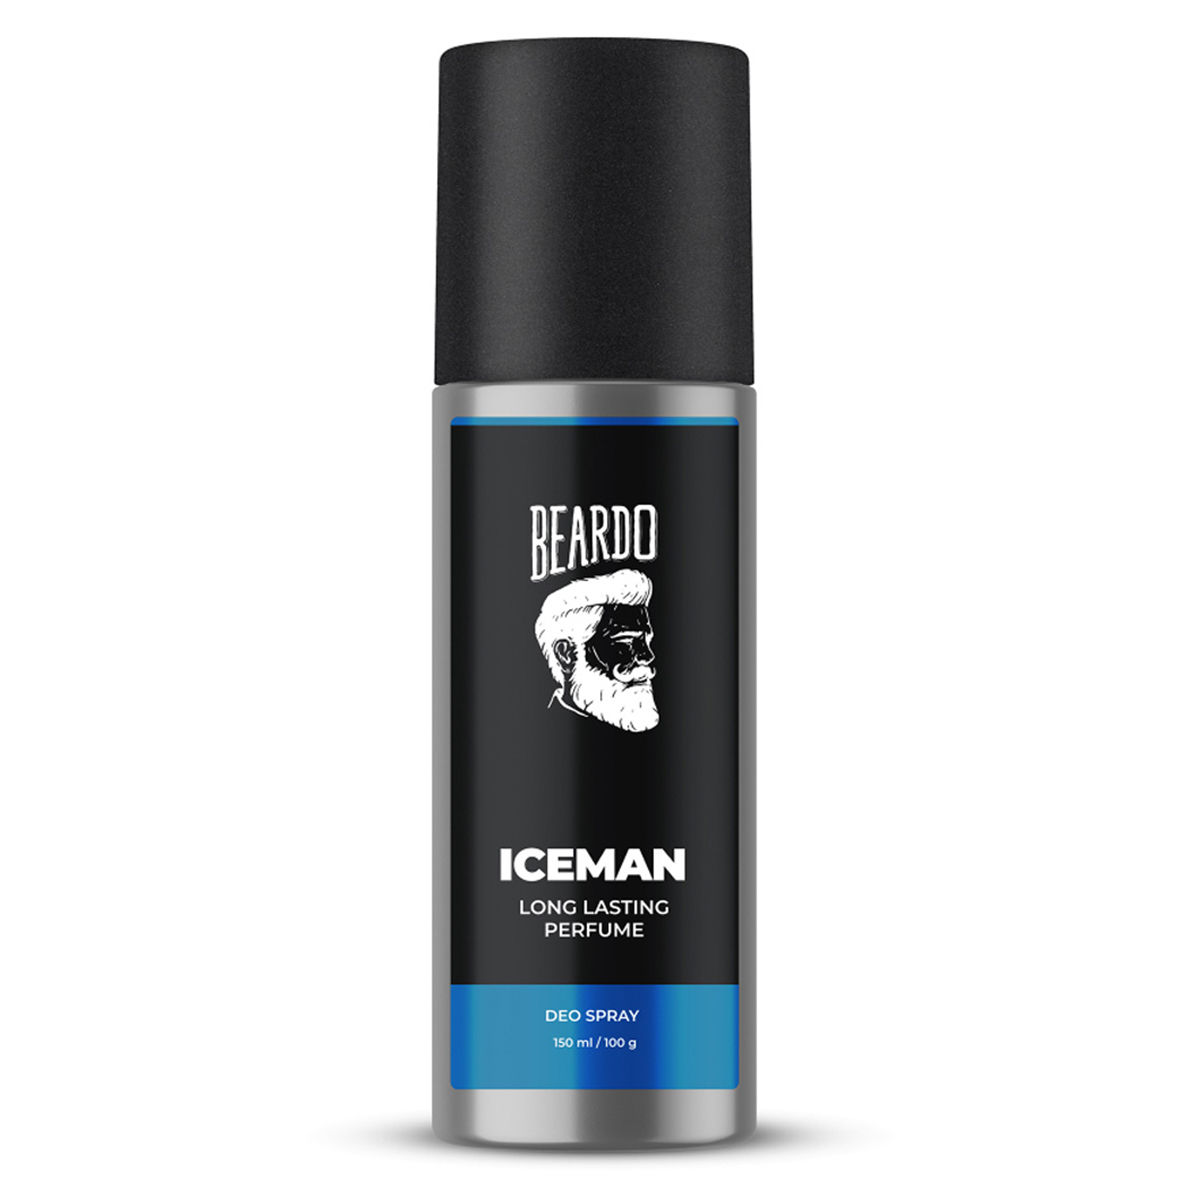 Beardo Iceman Long Lasting Perfume Deo Spray, 150 ml Price, Uses ...